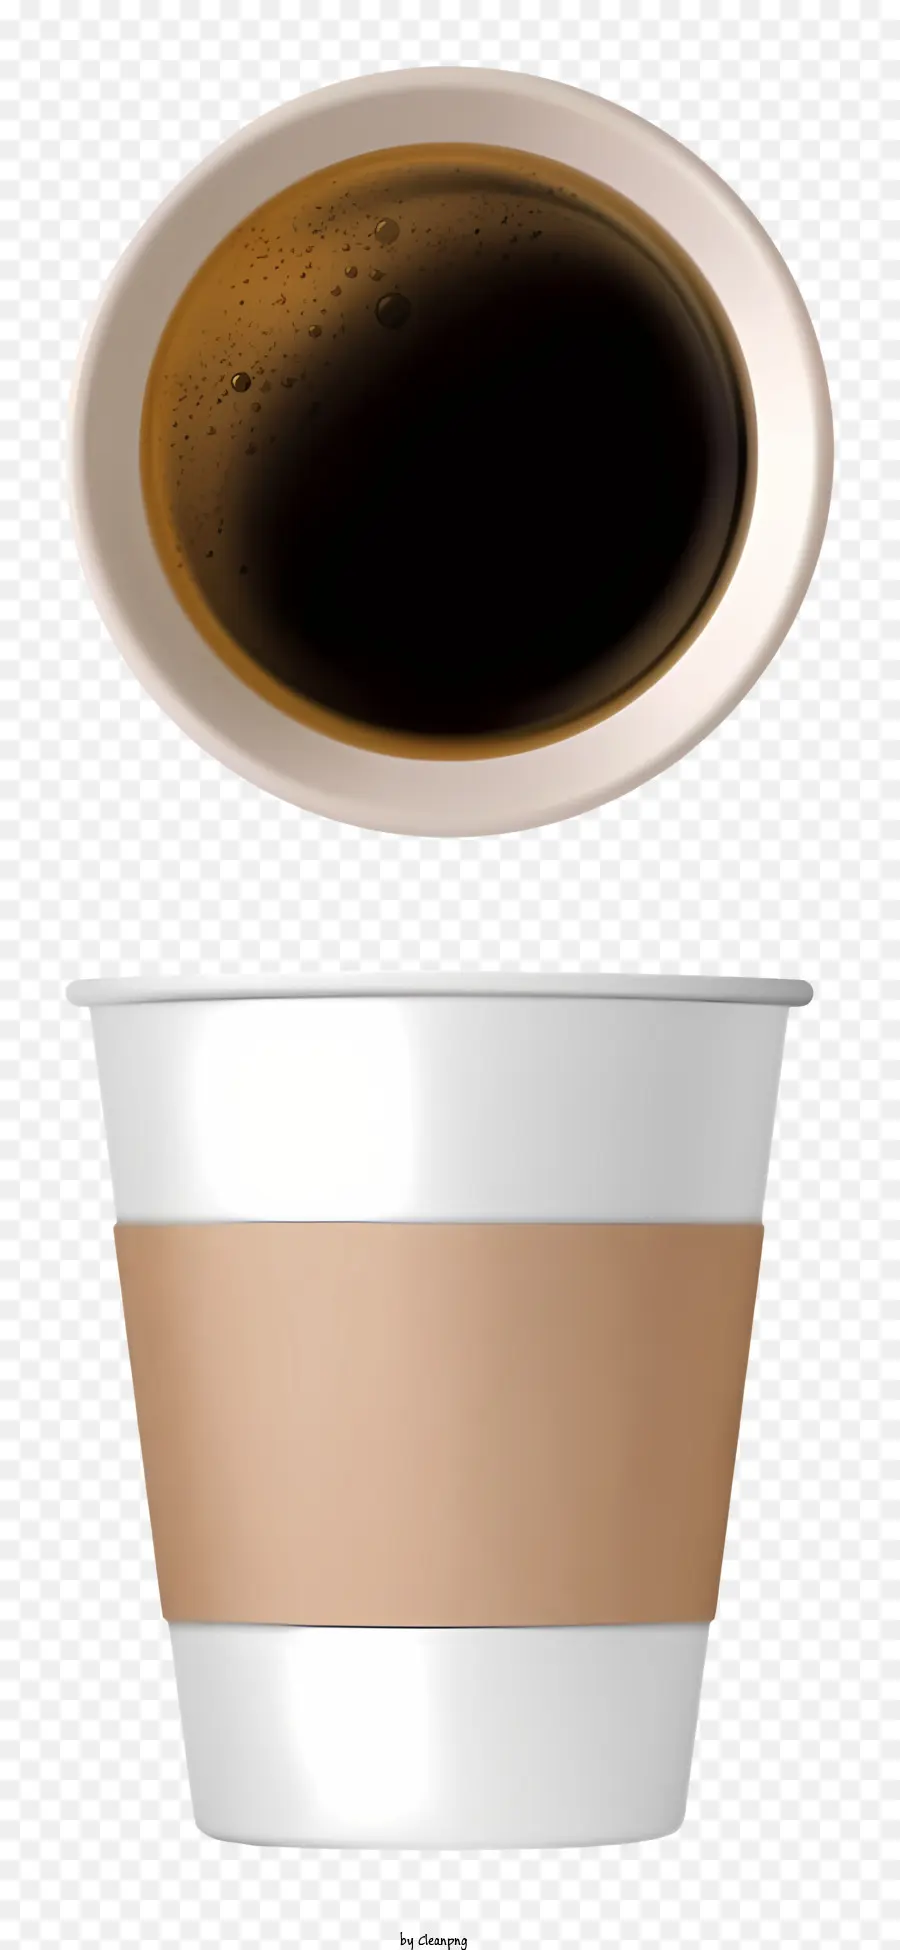 caffè - Tazza di caffè con liquido marrone vuoto all'interno